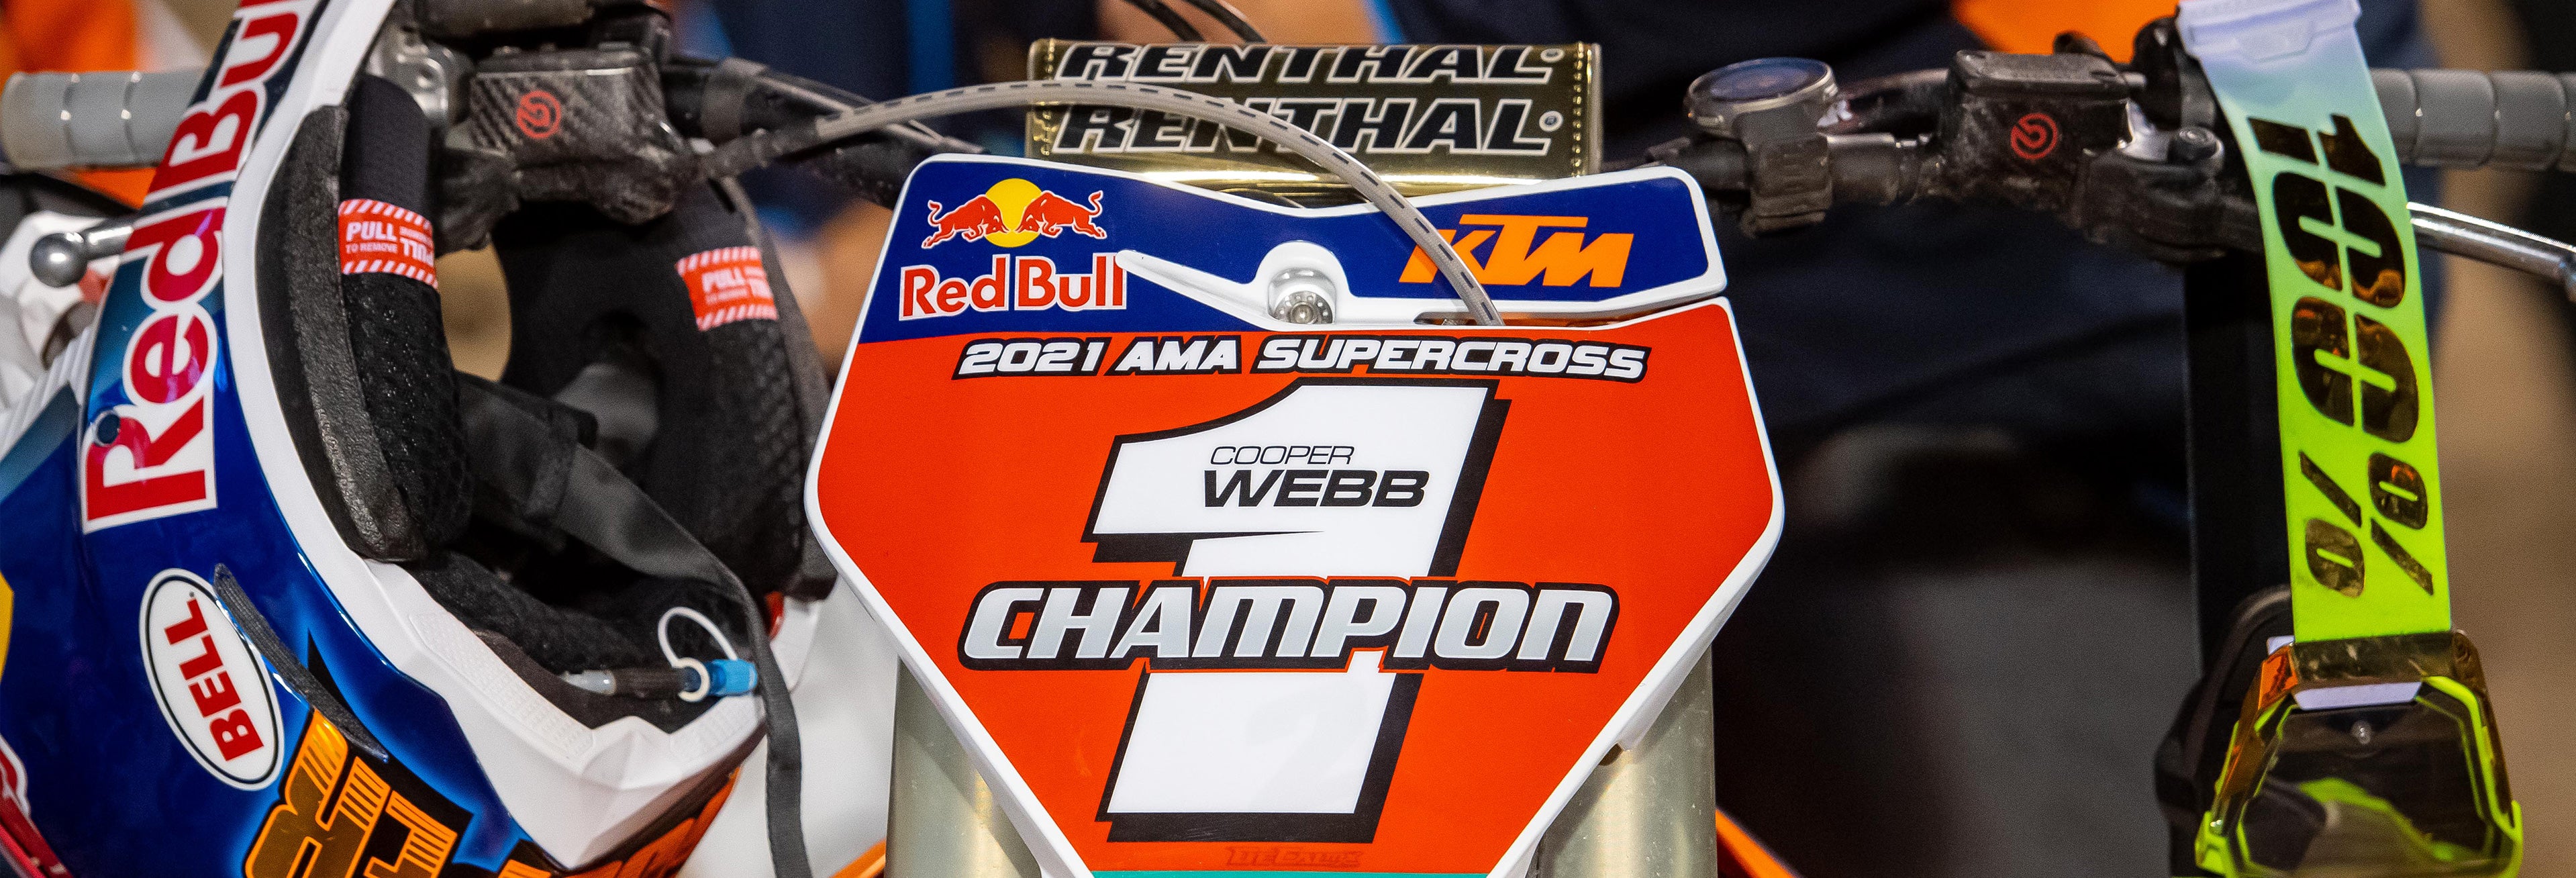 2021 SX Champions | Cooper Webb, Justin Cooper, Colt Nichols